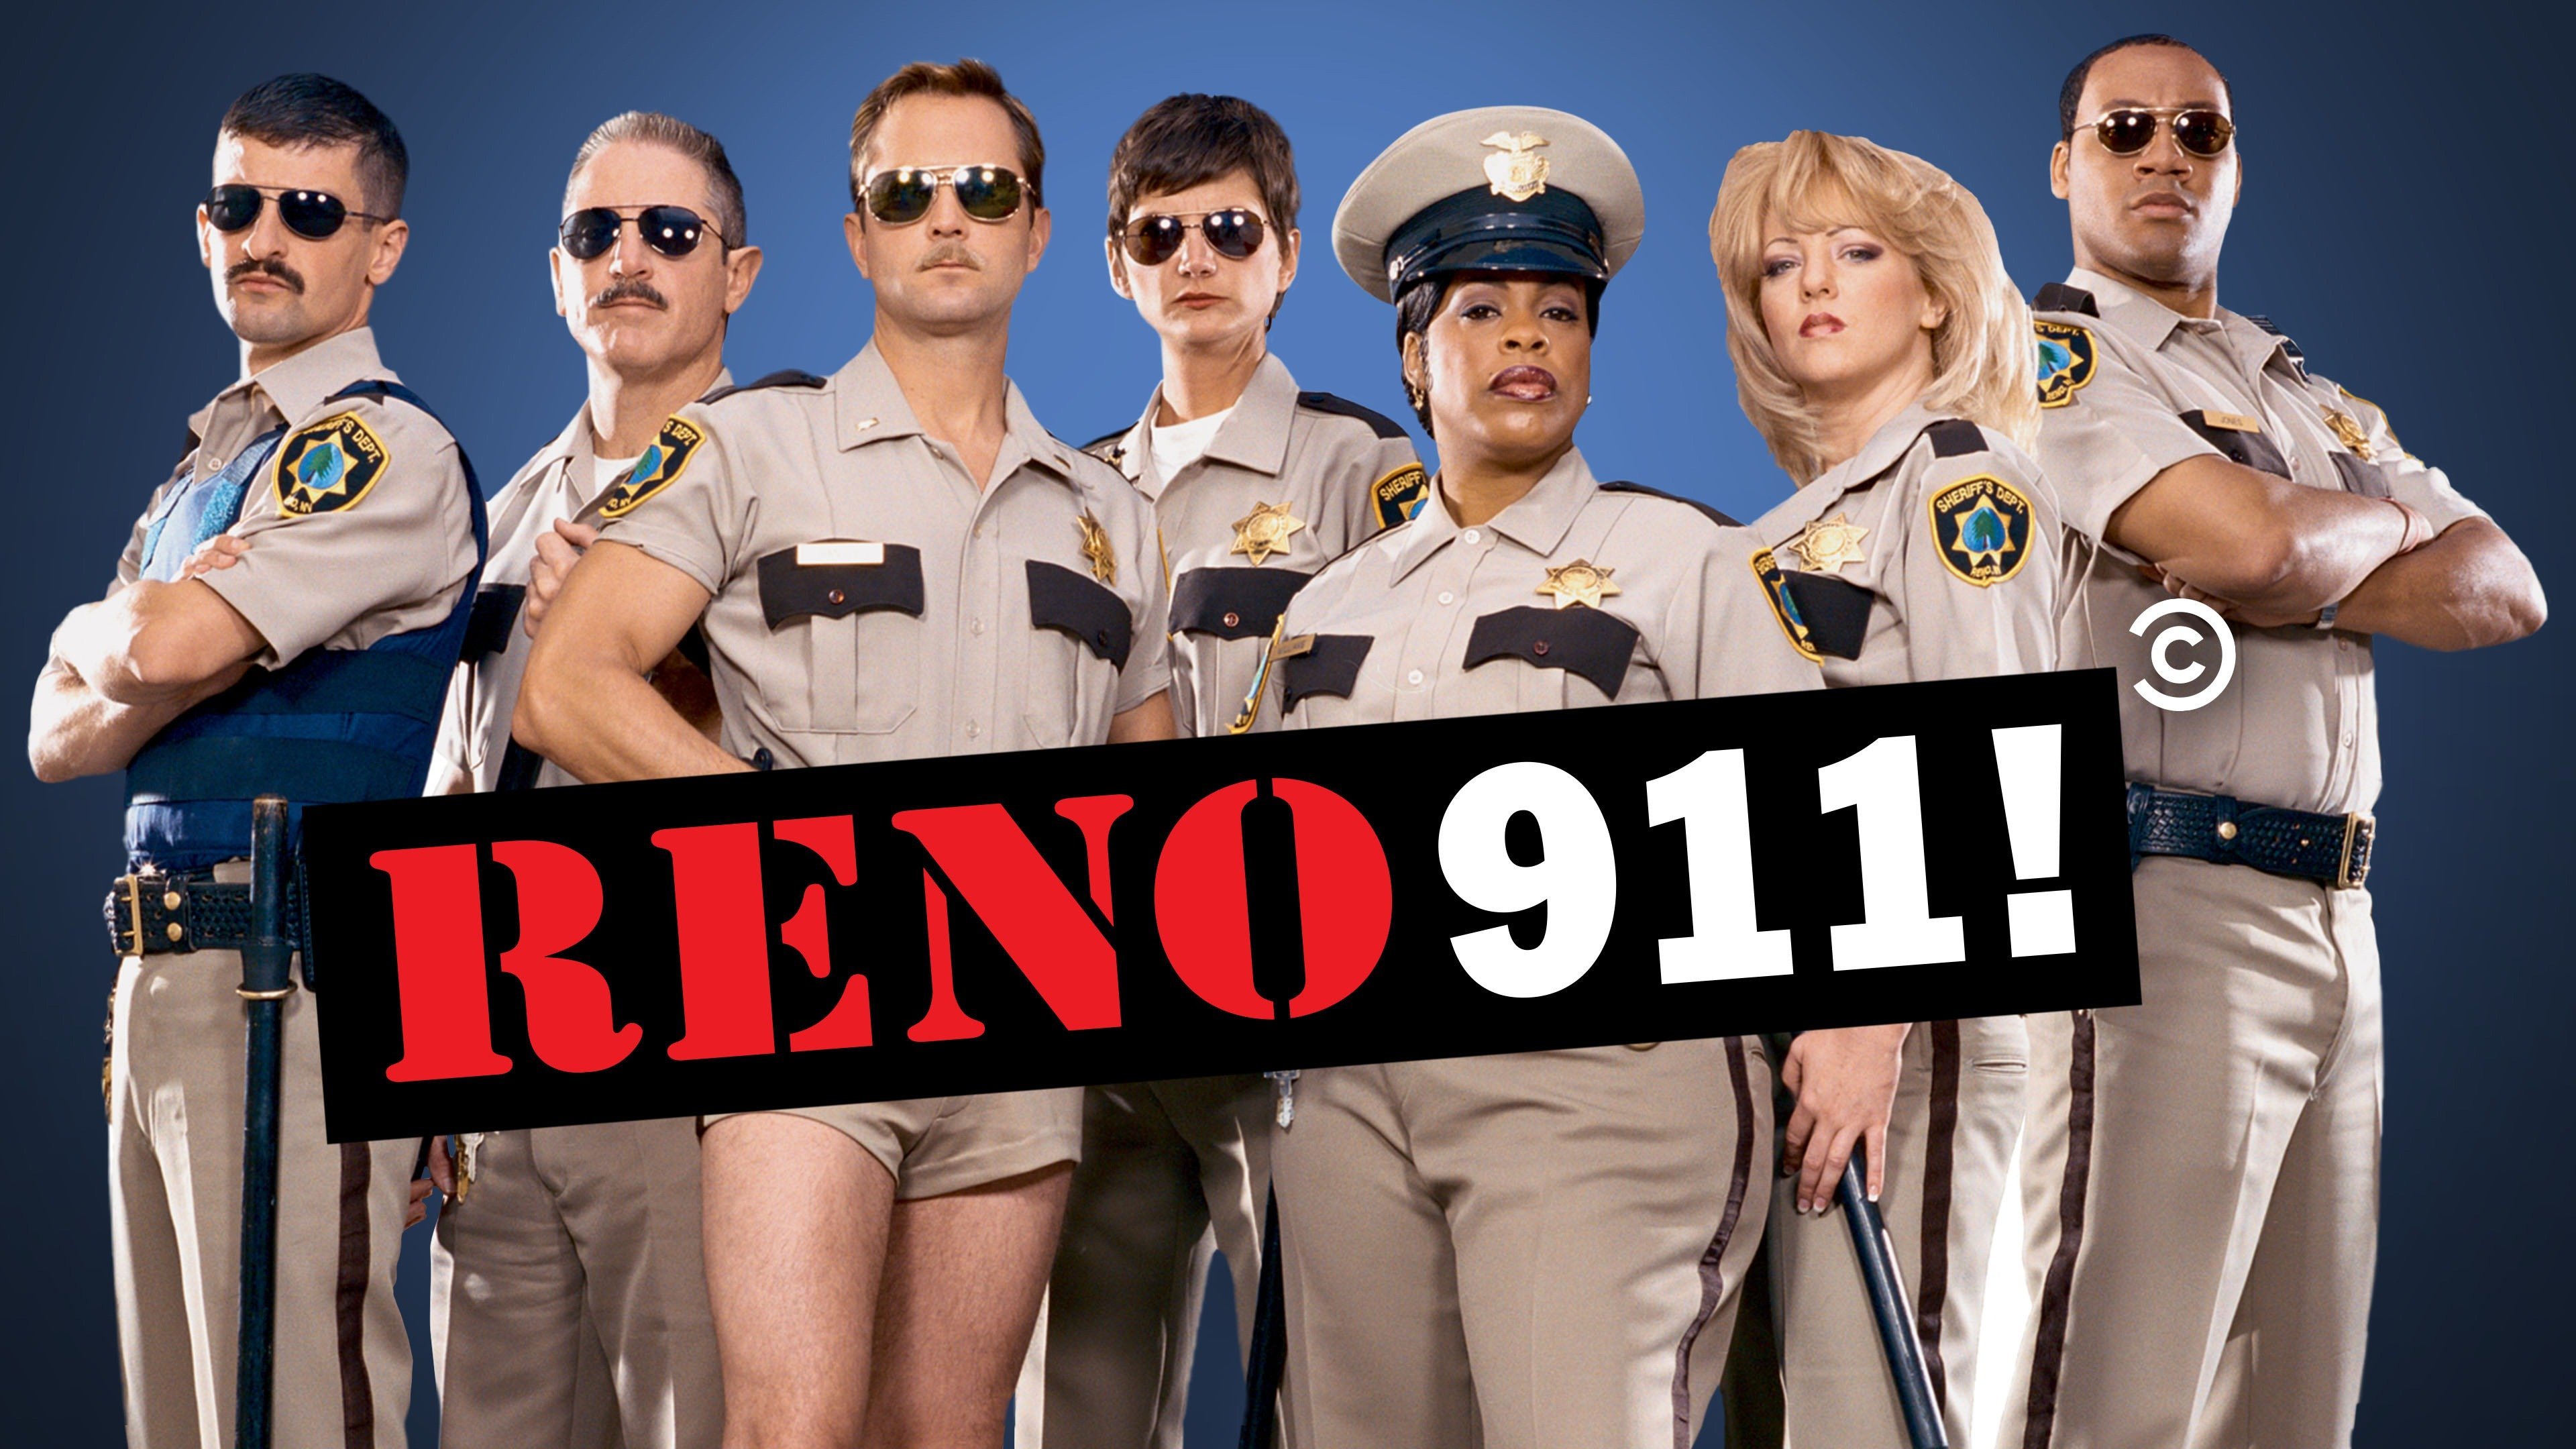 Assistir Reno 911 online - todas as temporadas